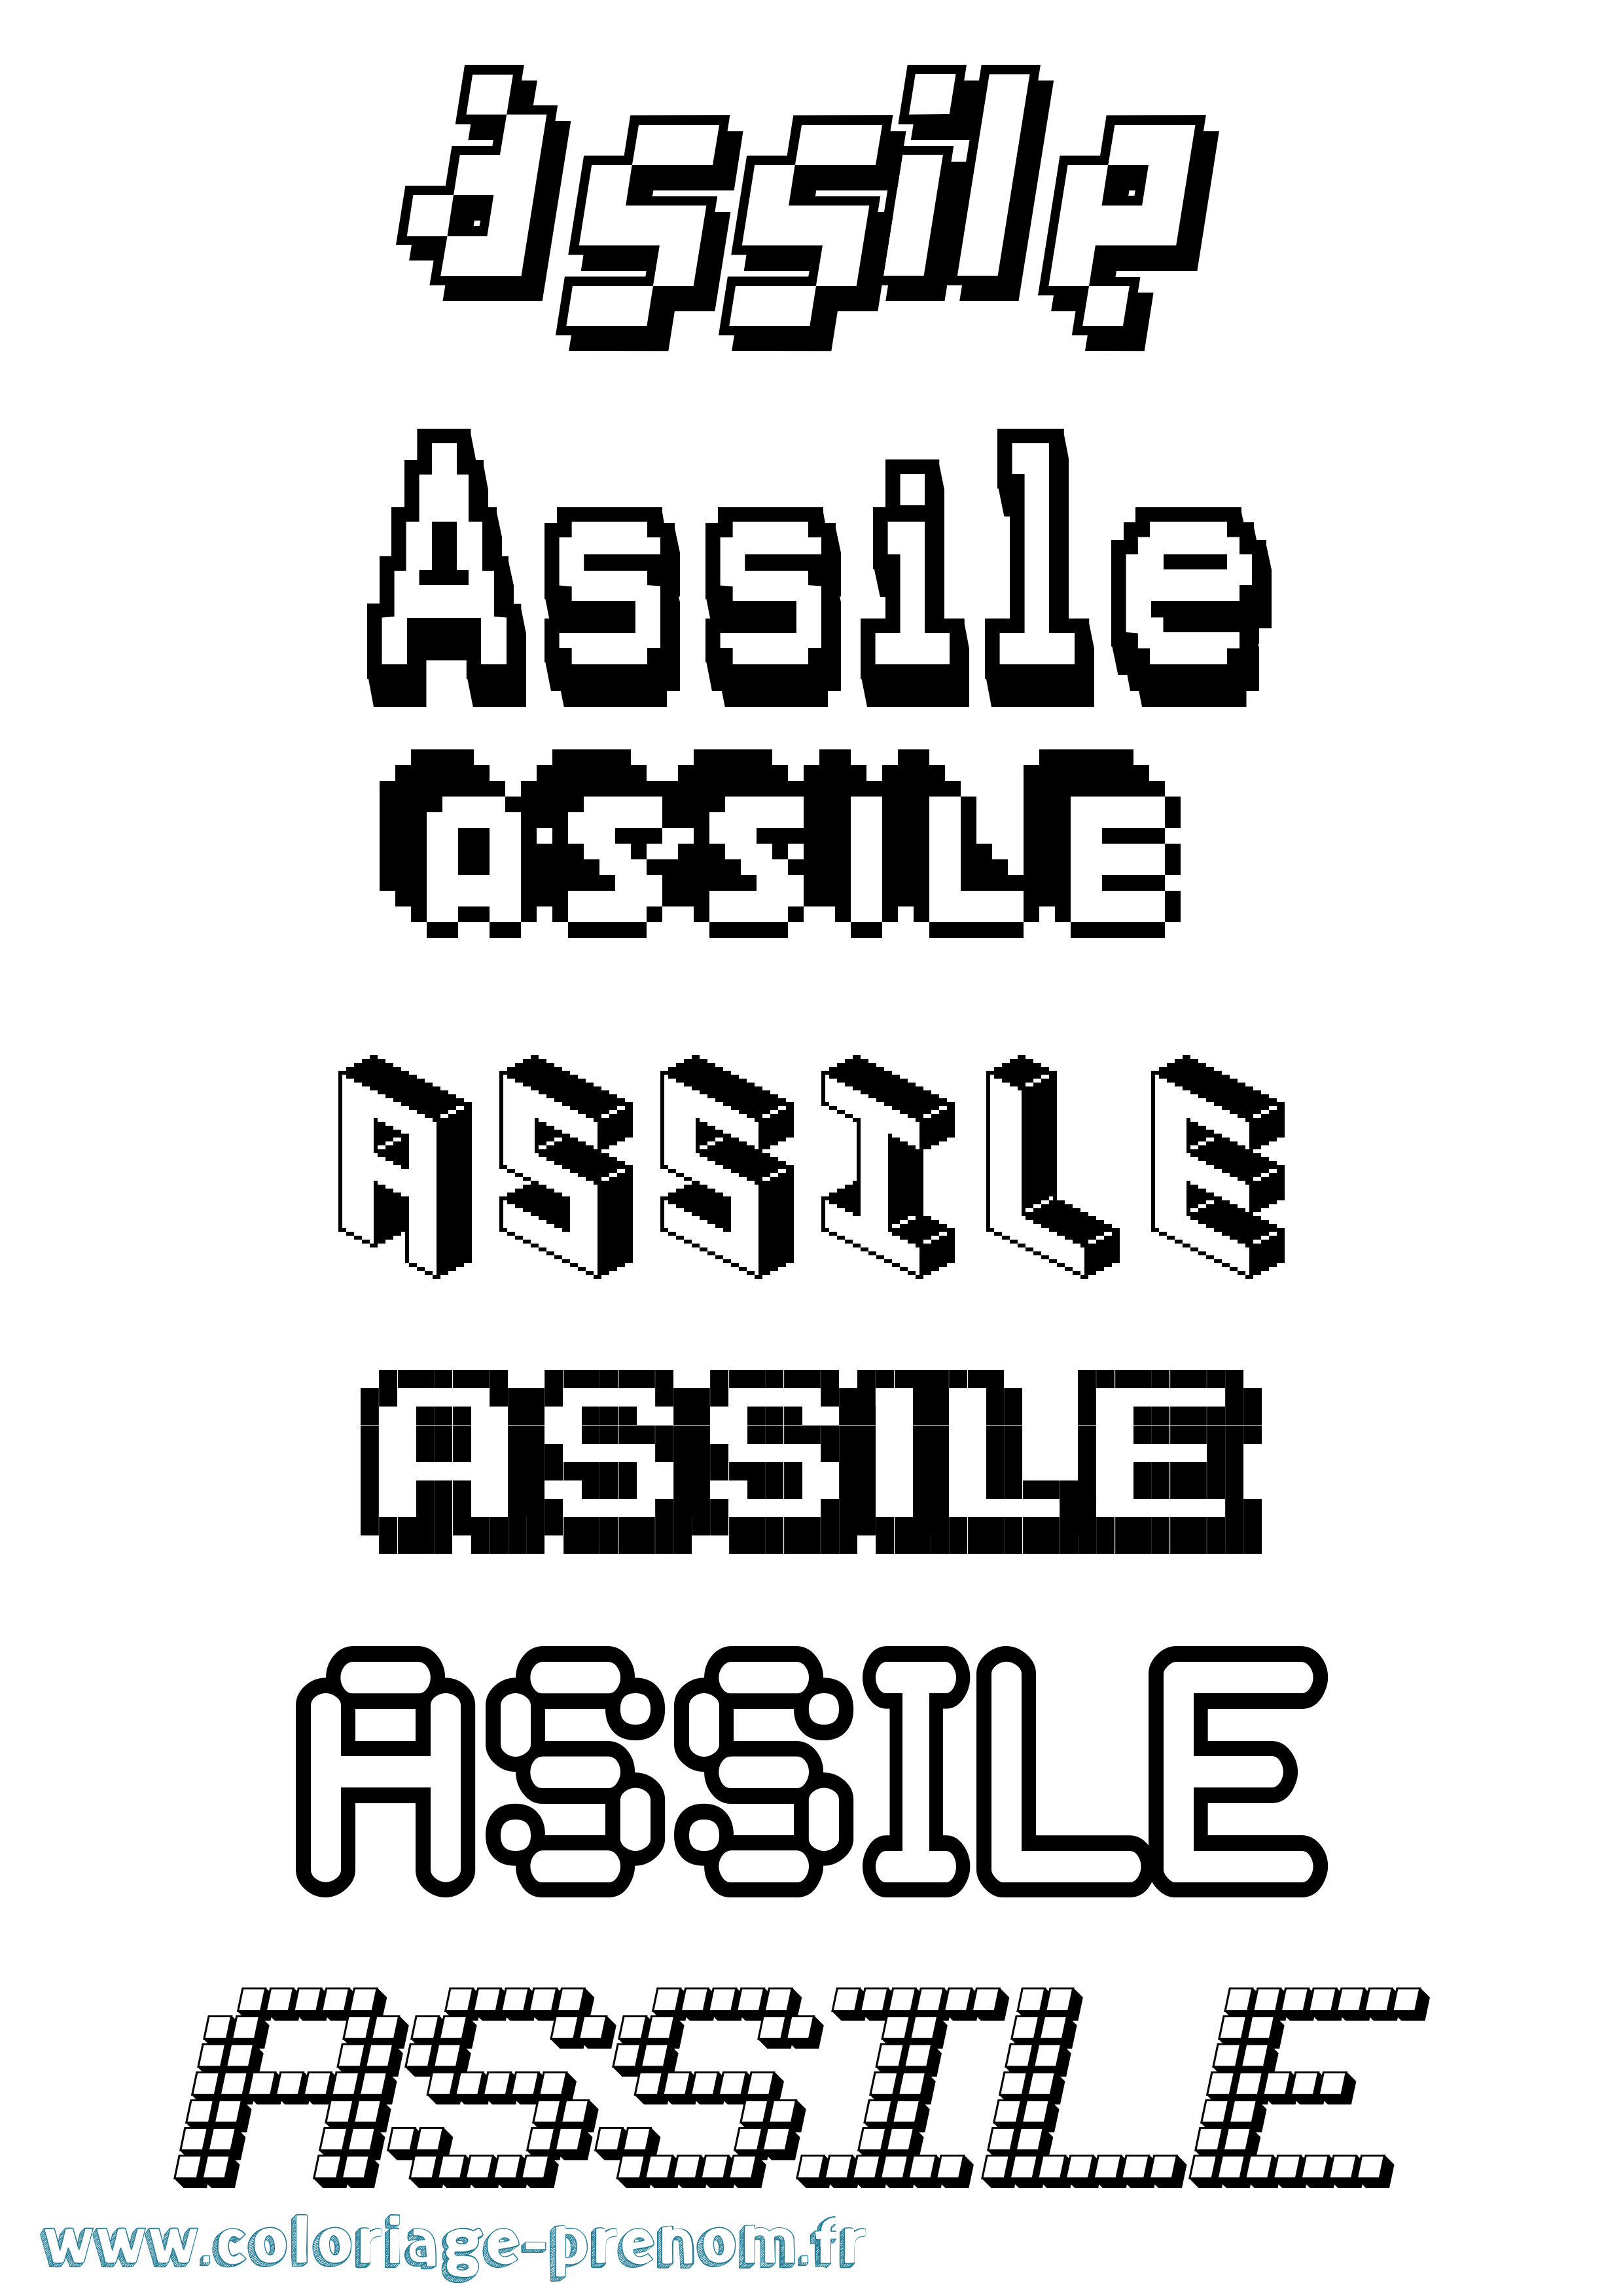 Coloriage prénom Assile Pixel